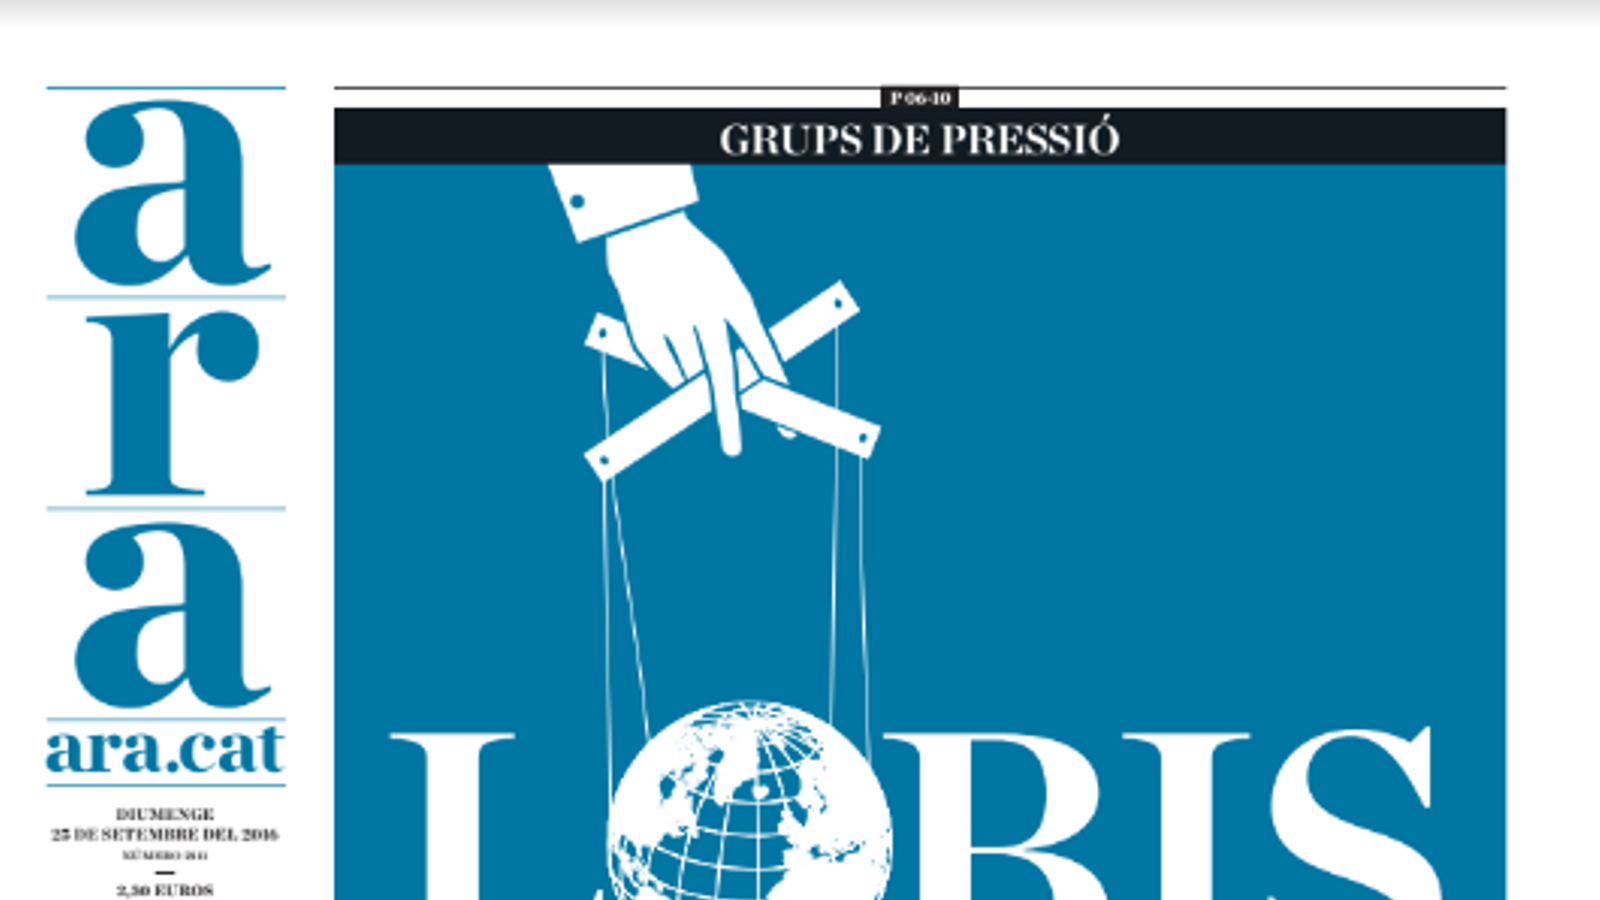 "Lobis: qui mou els fils?", a la portada de l'ARA d'aquest diumenge